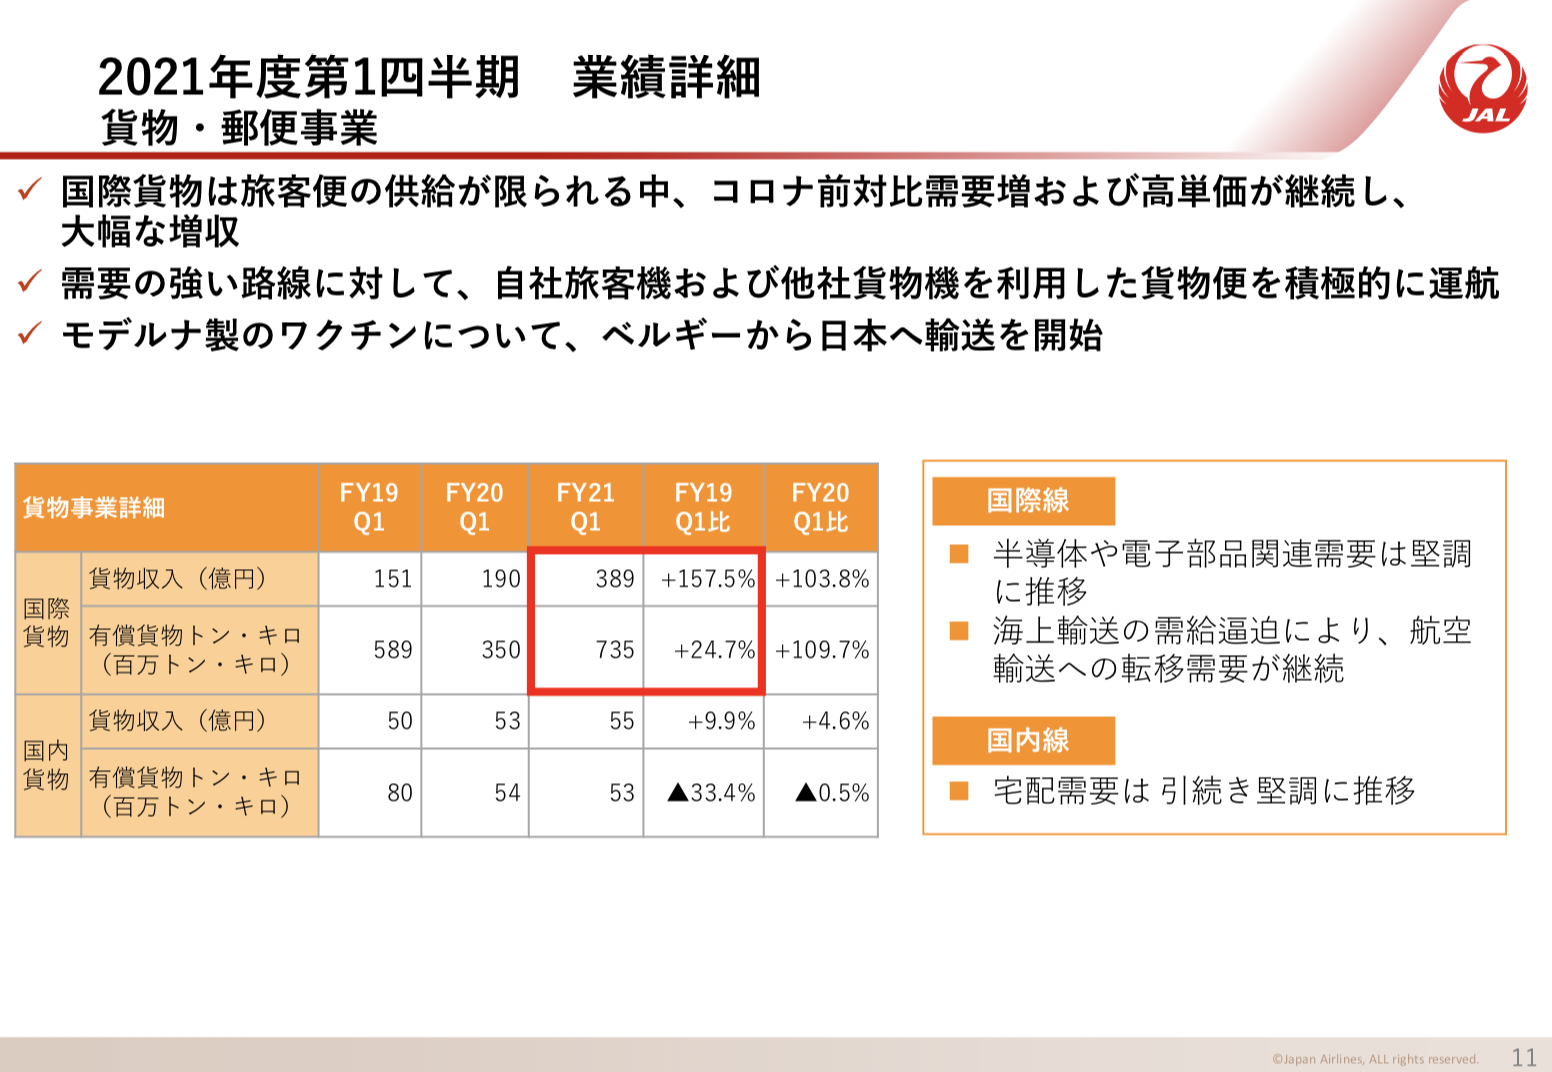 日本航空(JAL) 2021年度1Q決算を徹底解説！　さとり世代の株日記 資産運用 株 投資 資産形成